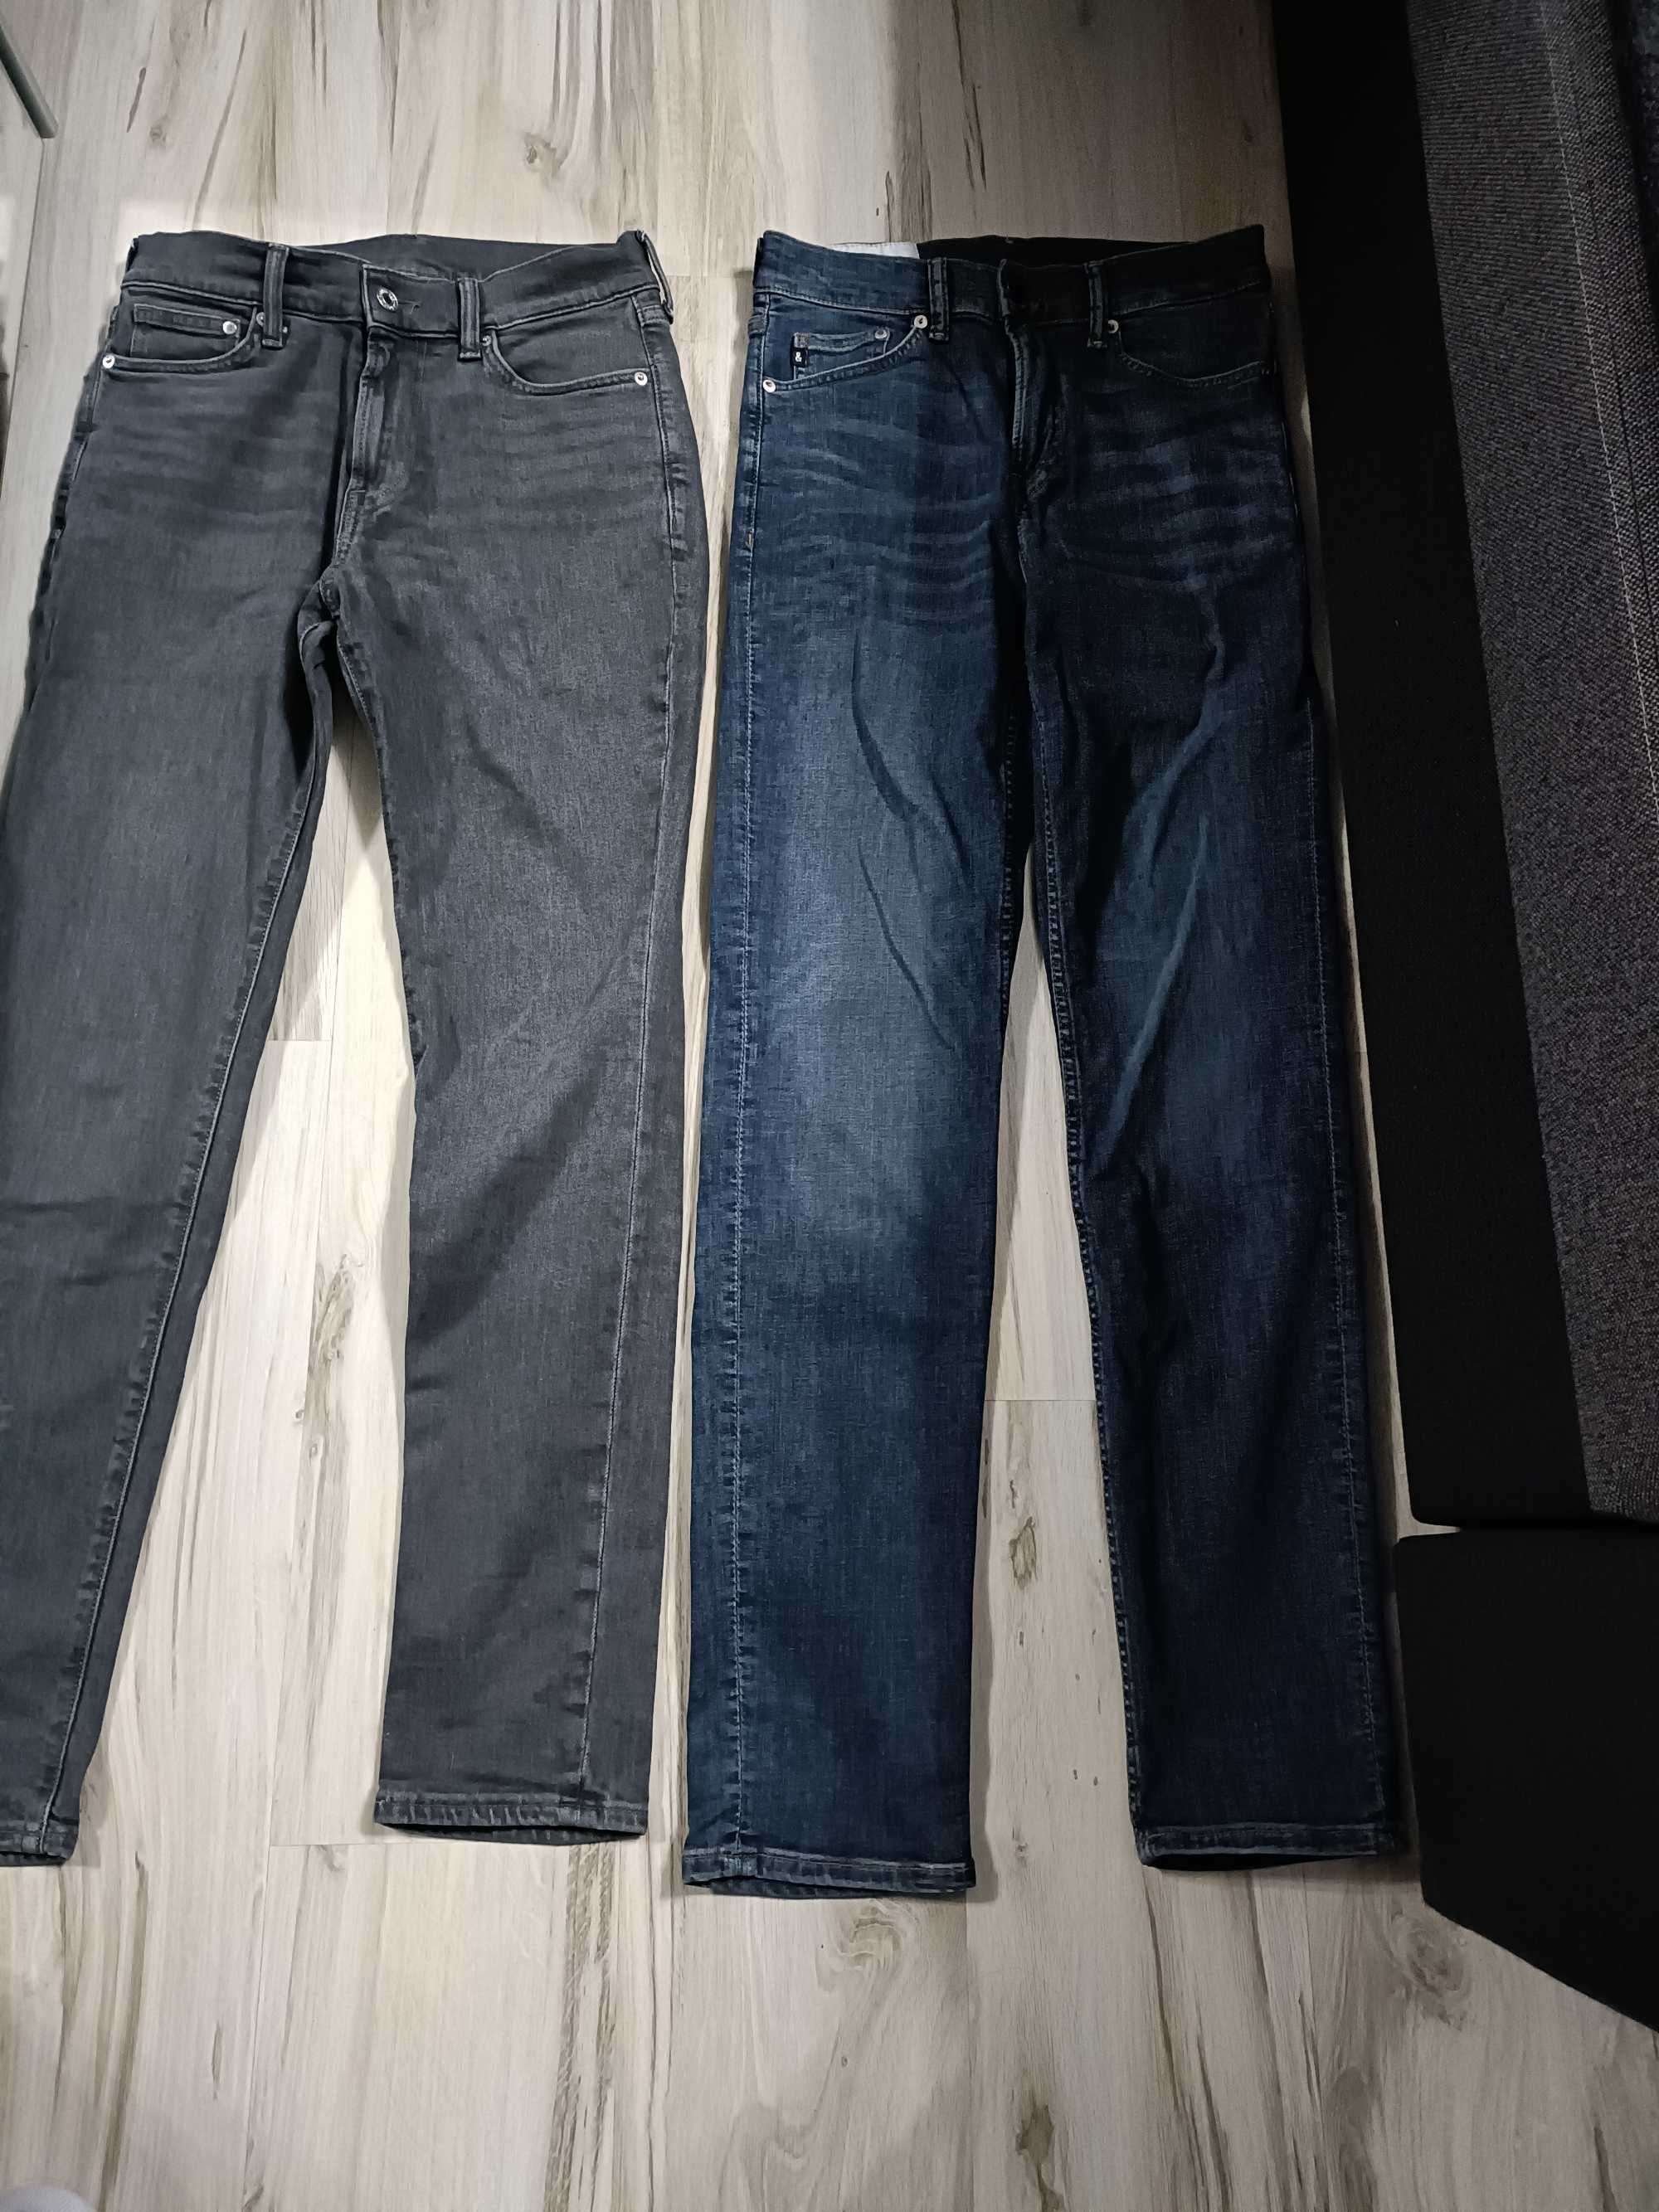 2 pary męskich jeansów rozm. 29/32 H&M